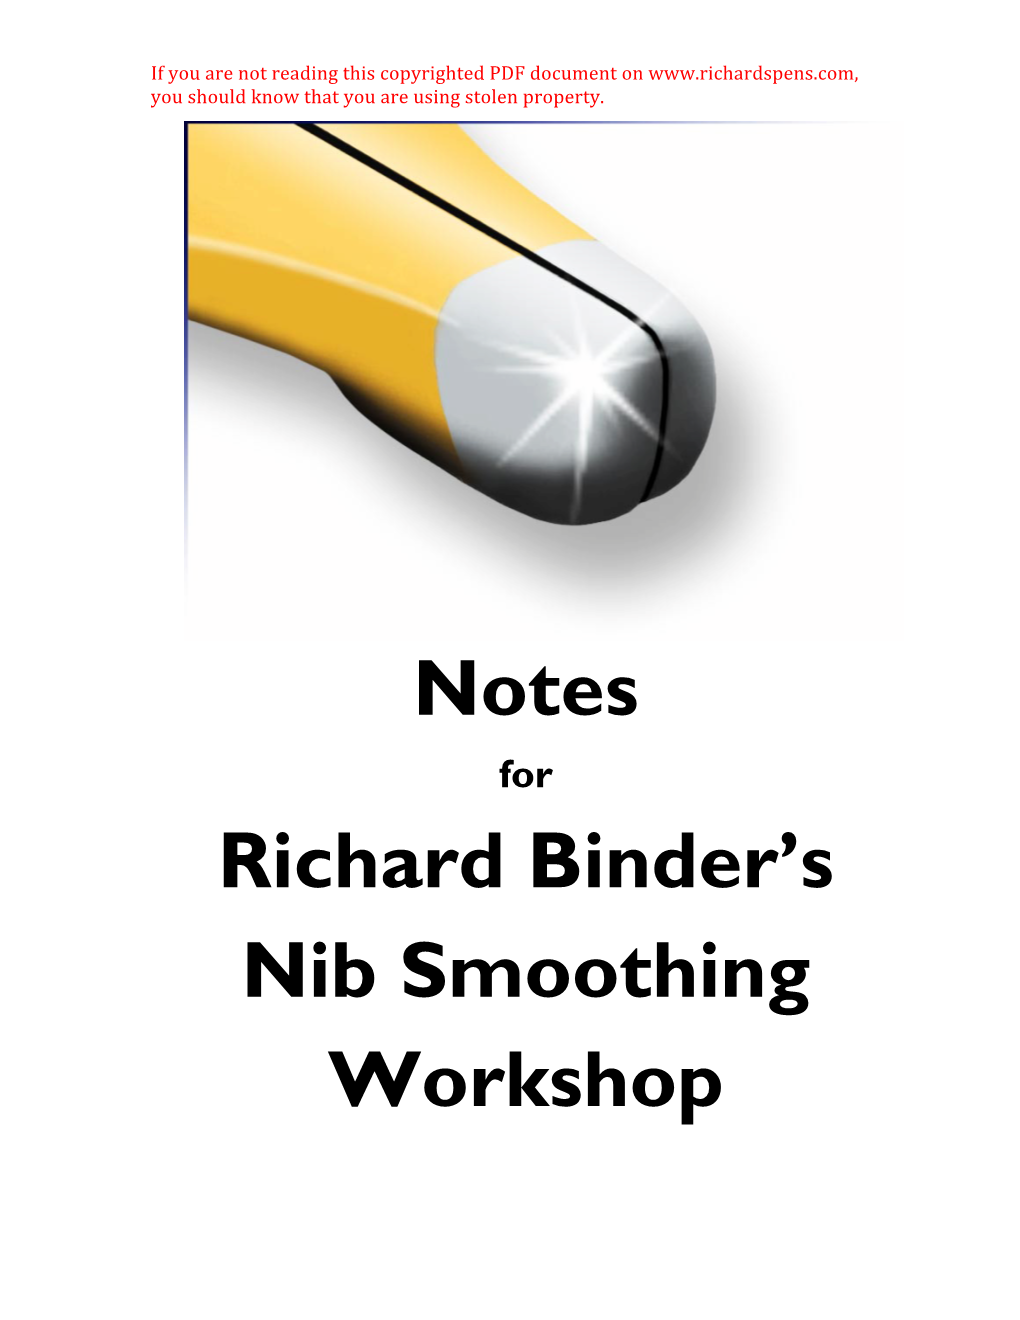 Notes Richard Binder's Nib Smoothing Workshop